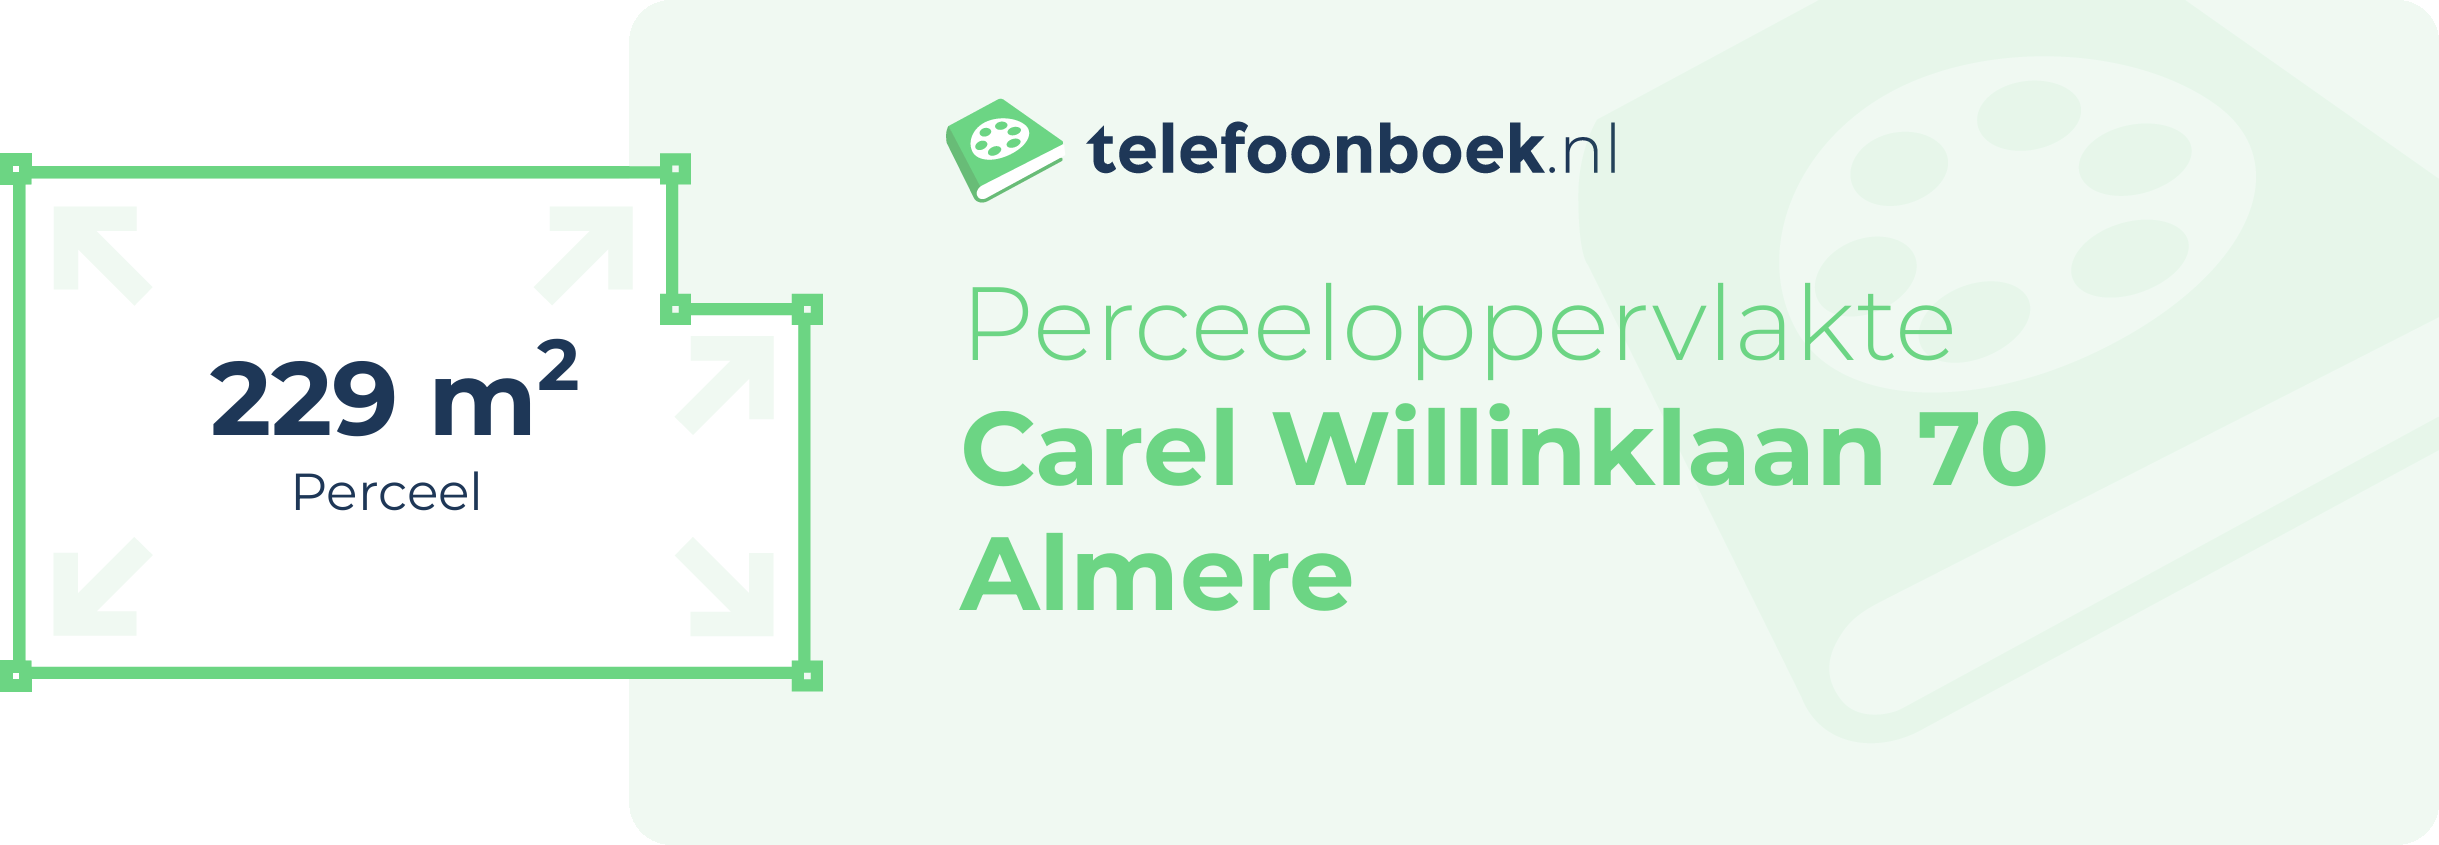 Perceeloppervlakte Carel Willinklaan 70 Almere